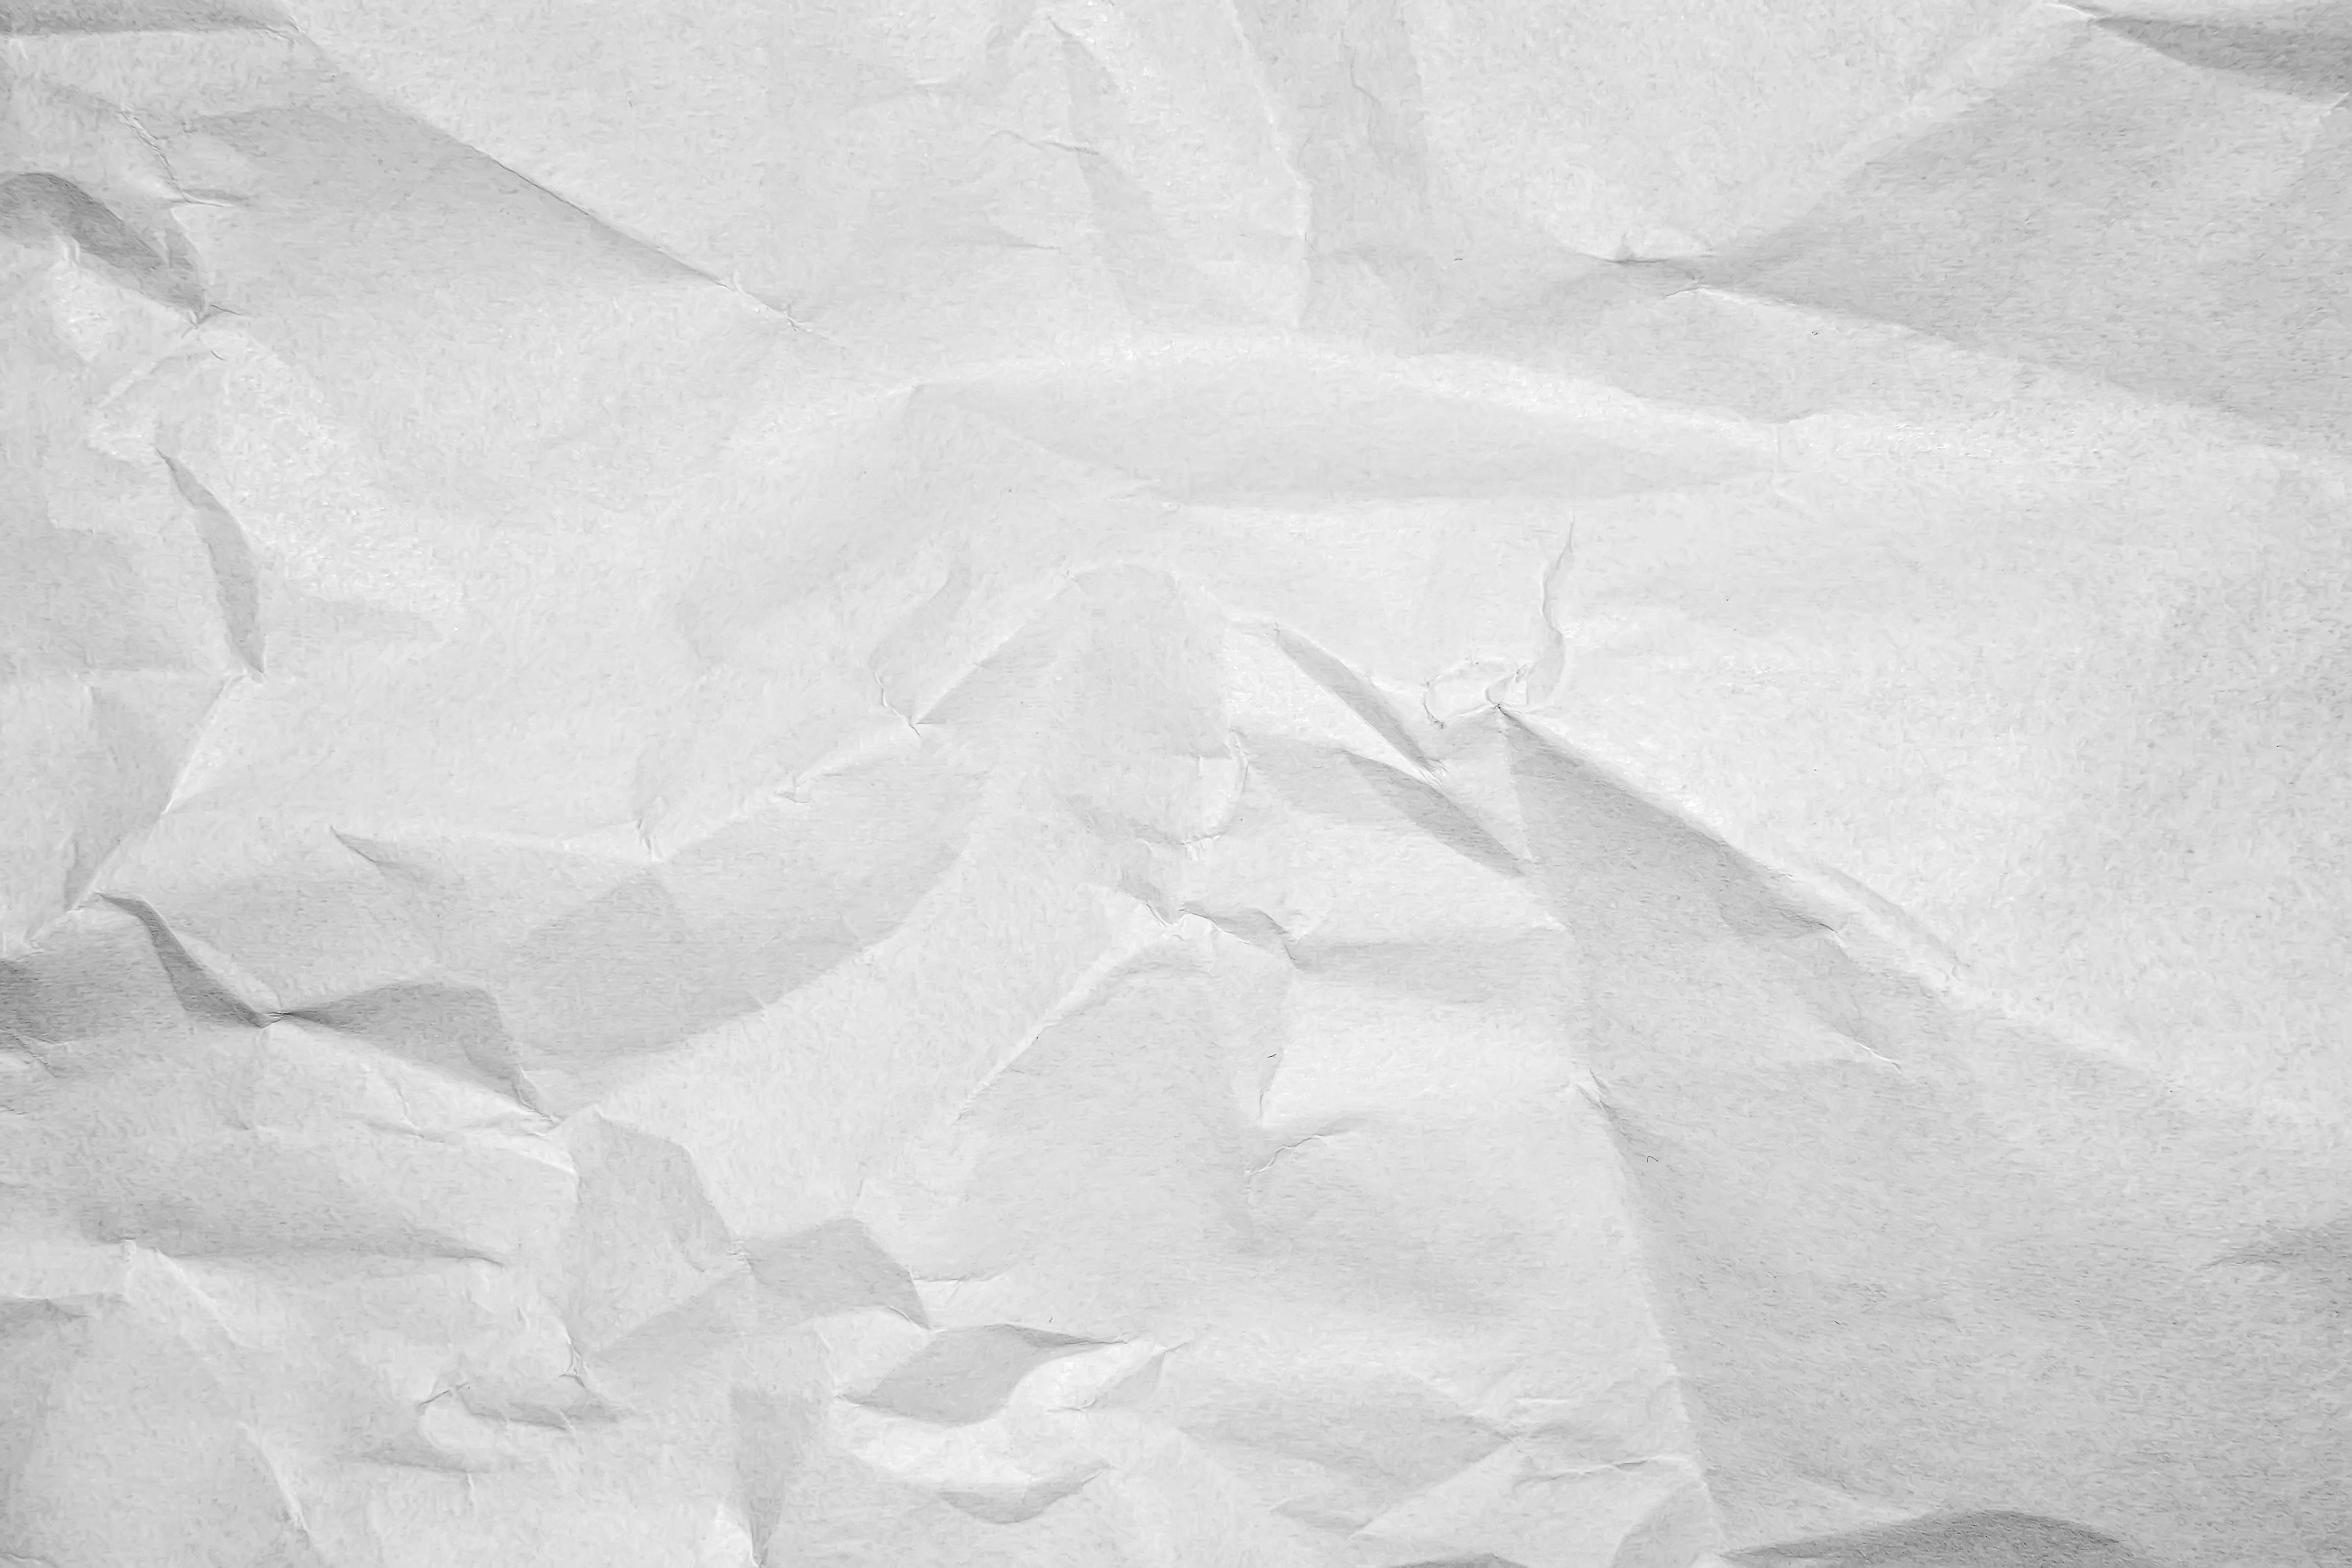 Смятый листок бумаги